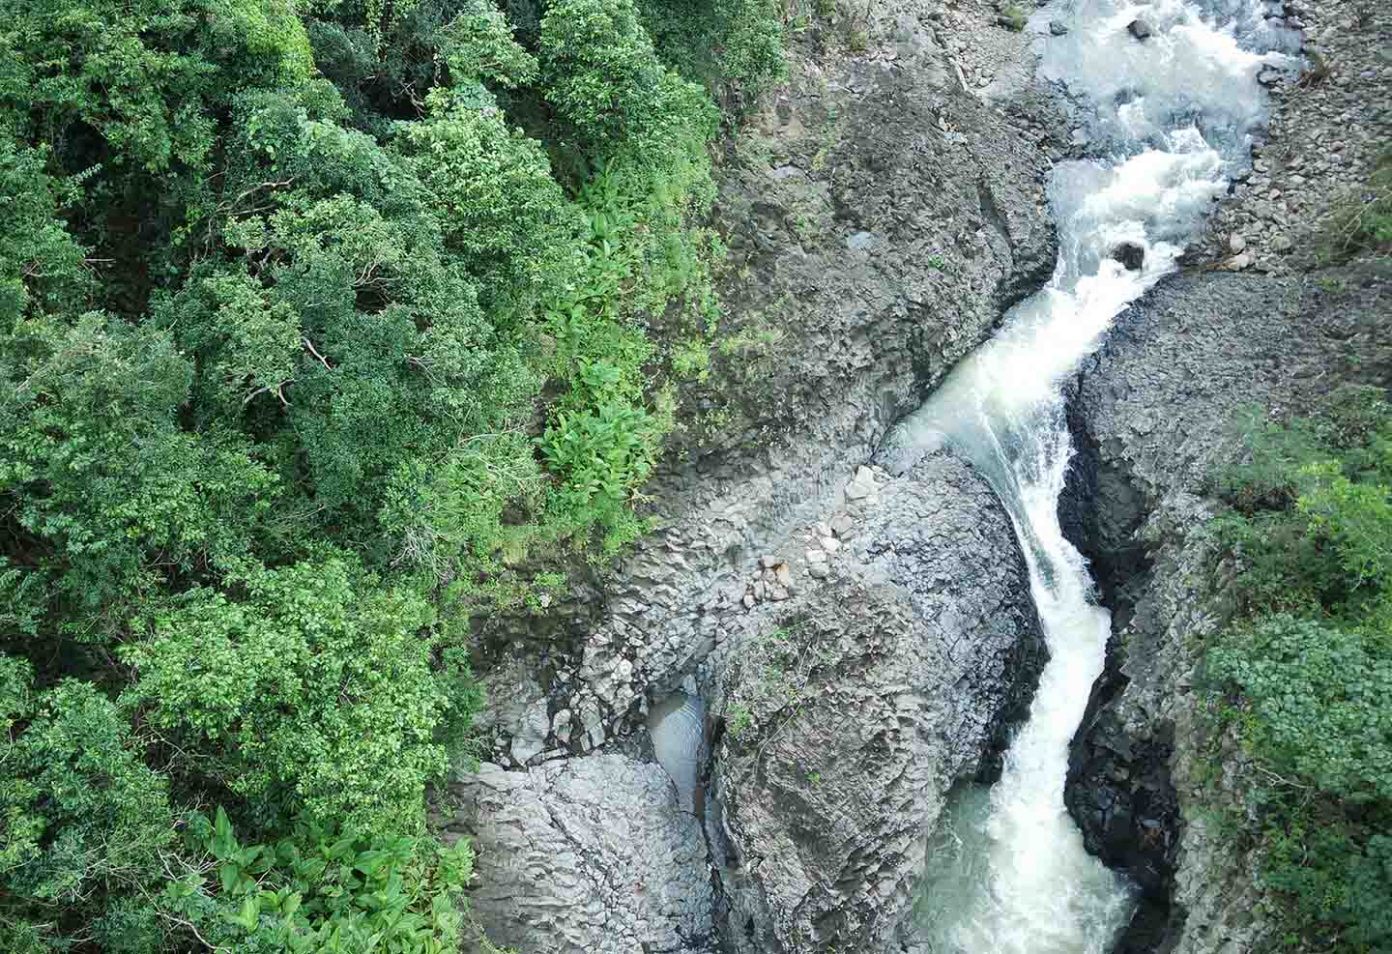 Vực Hòm Waterfall leads the vote “Top 7 magical waterfalls”